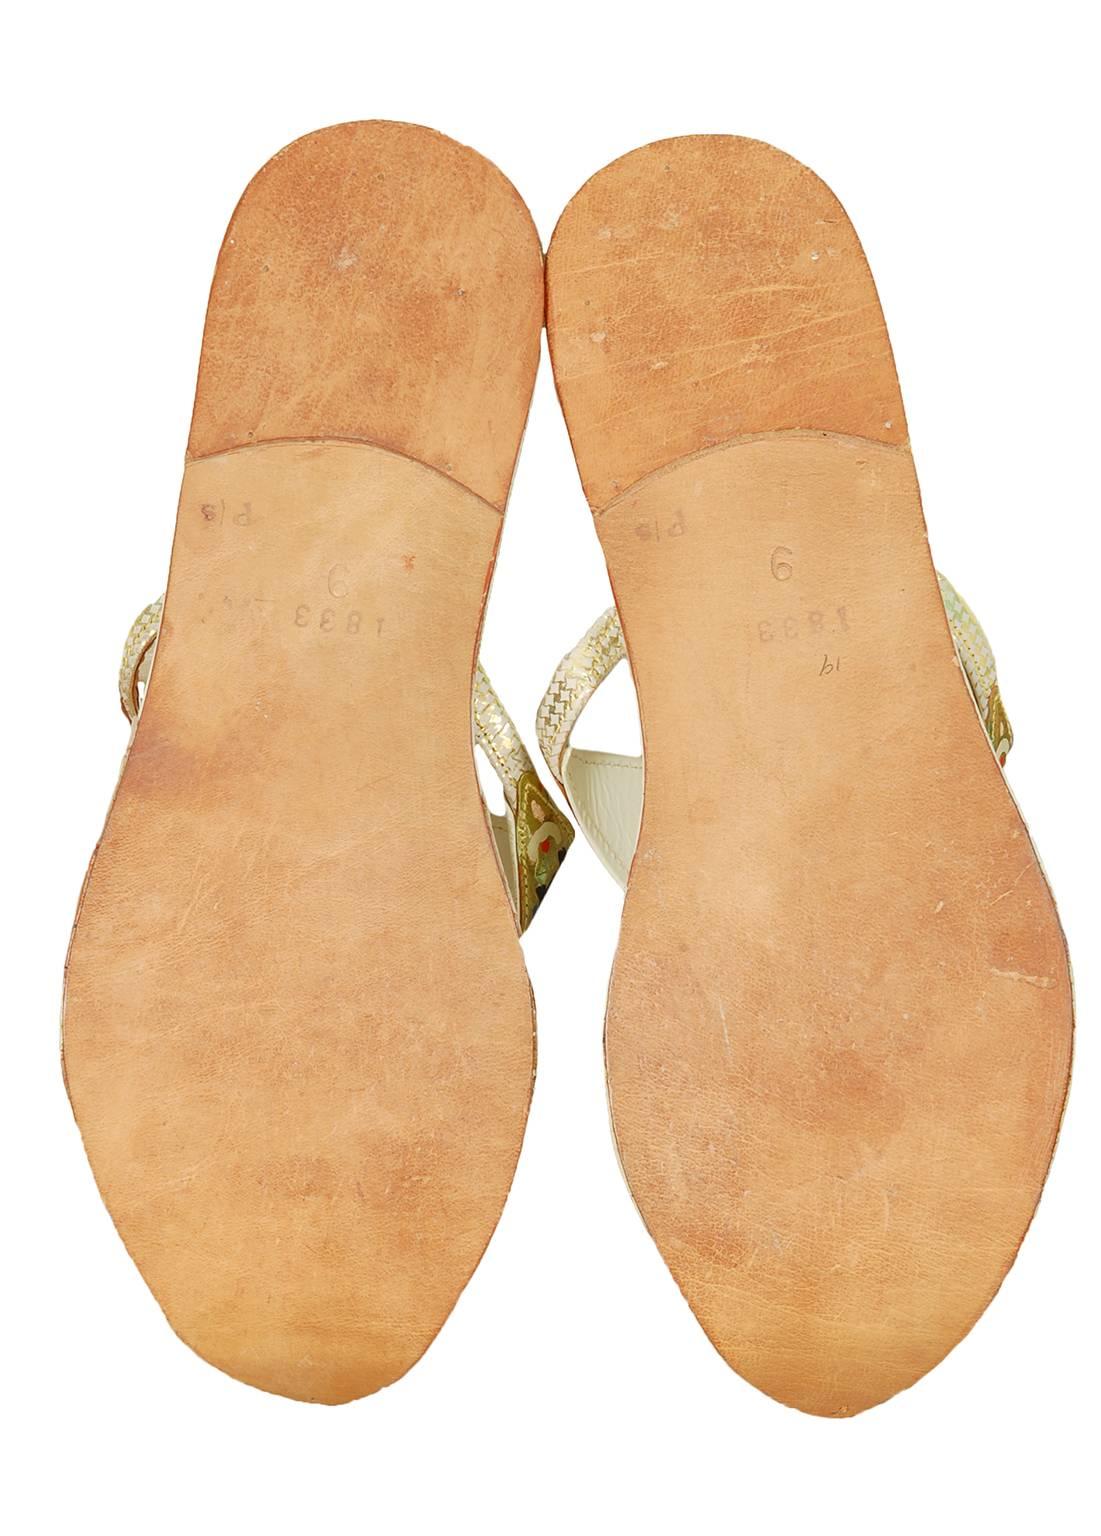 persian sandals